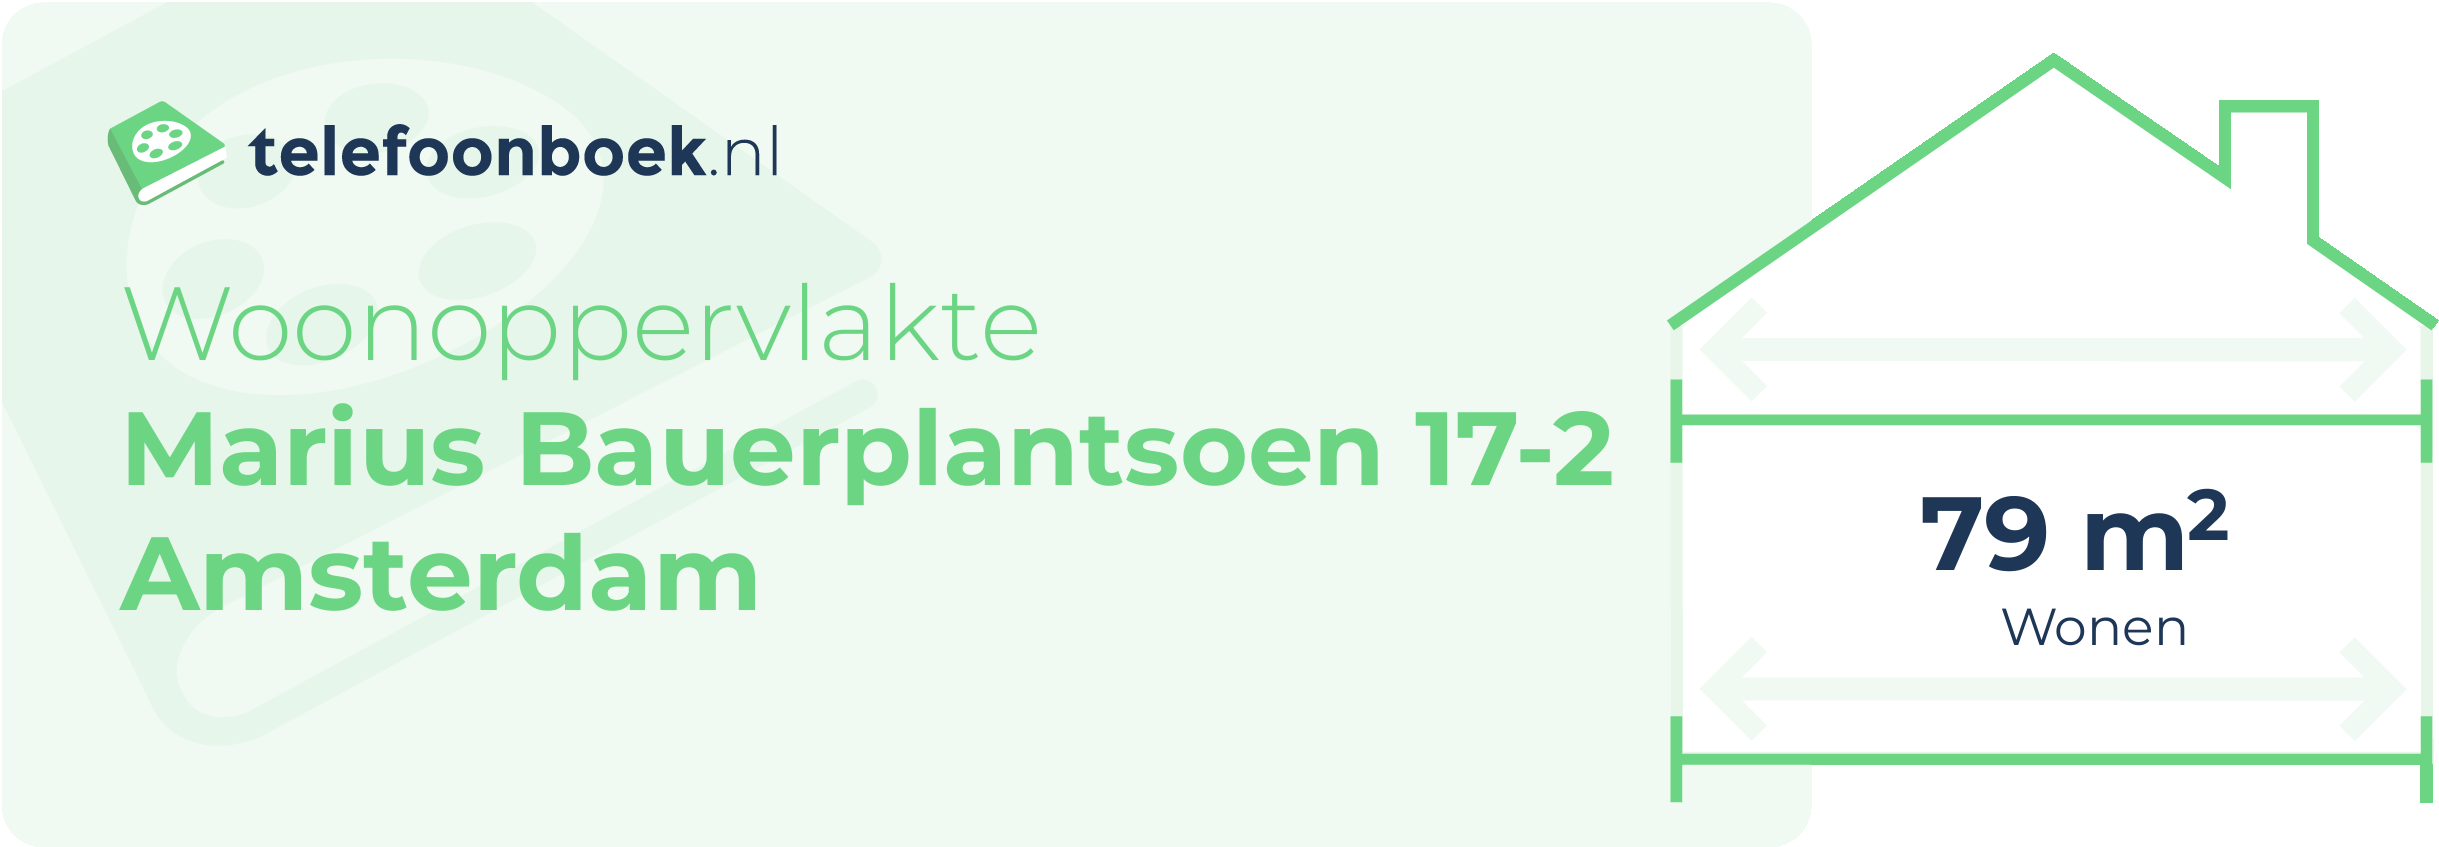 Woonoppervlakte Marius Bauerplantsoen 17-2 Amsterdam